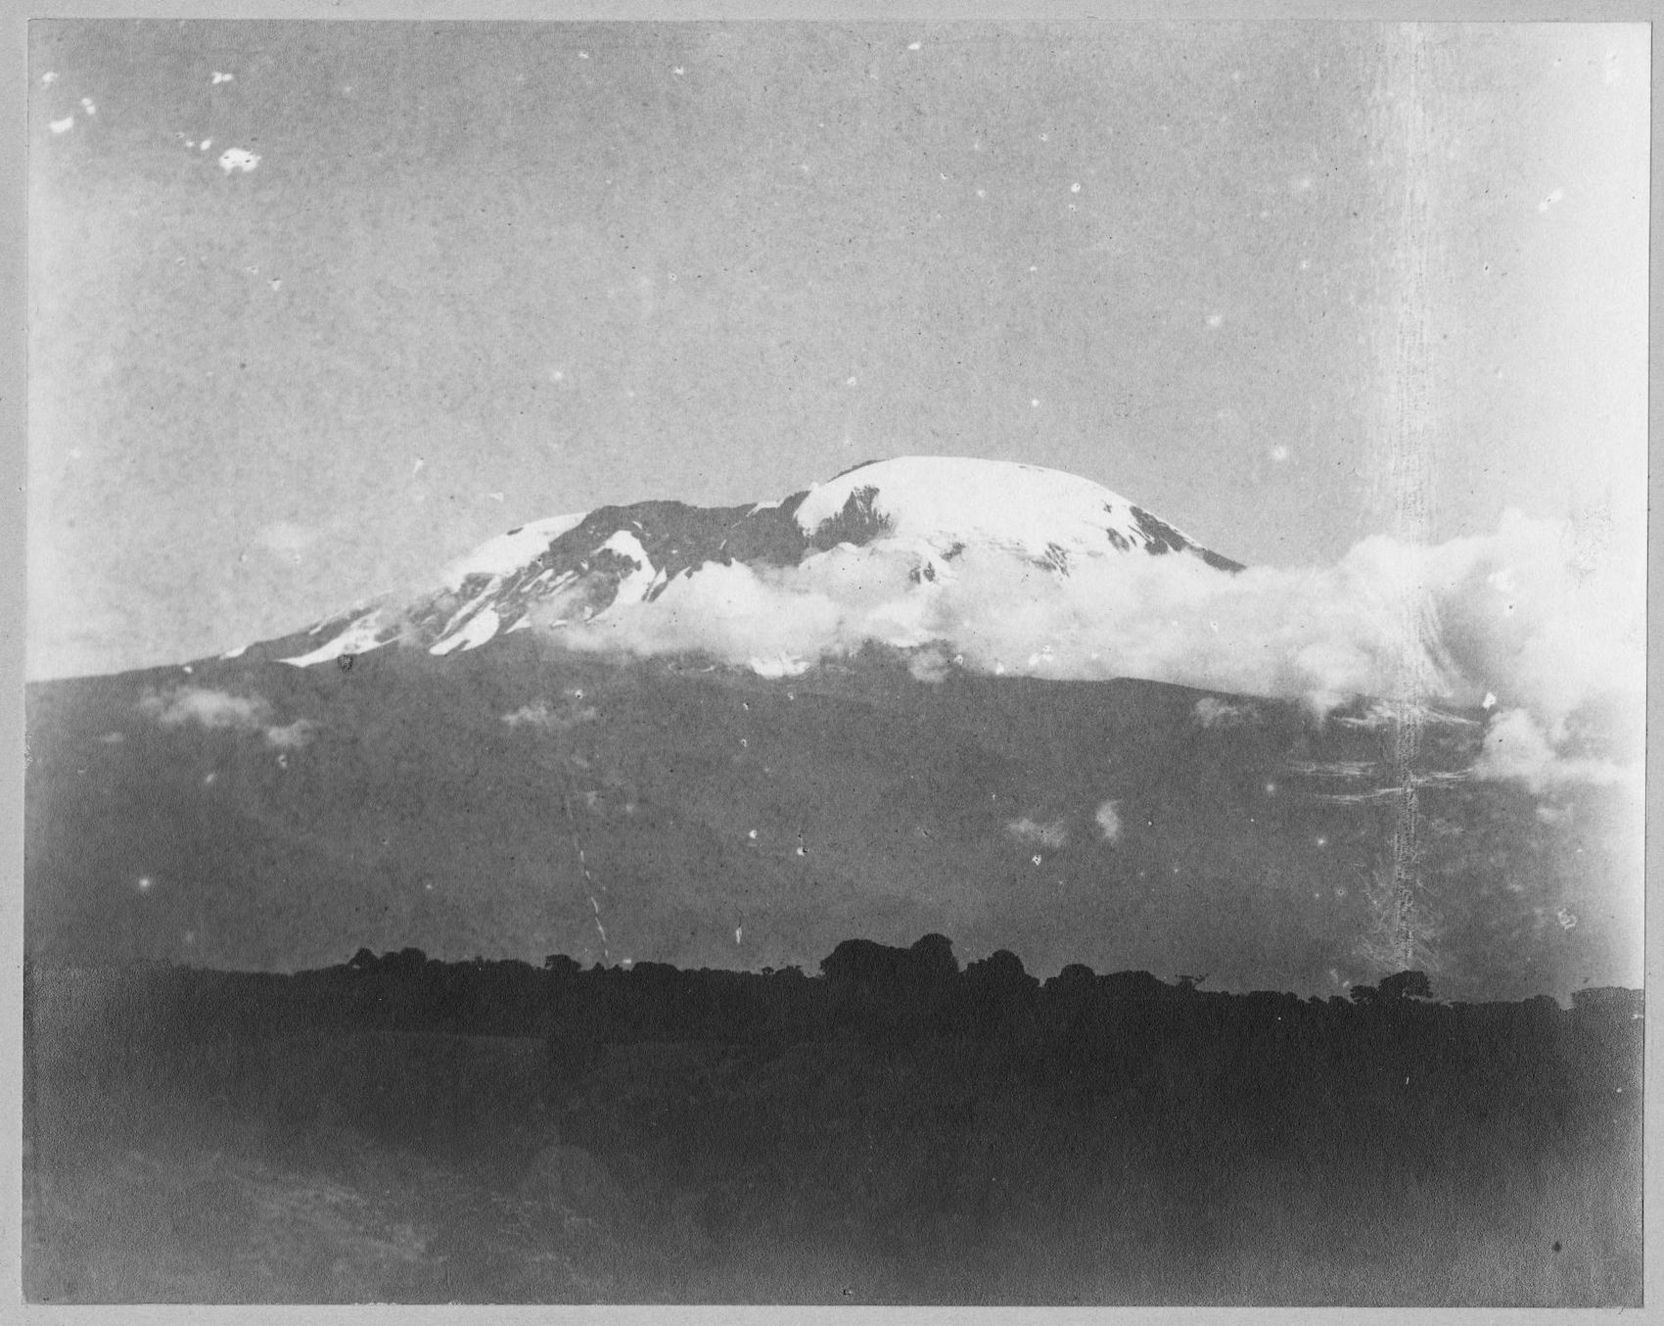 Historische Fotografie des verschneiten Kilimandscharos.